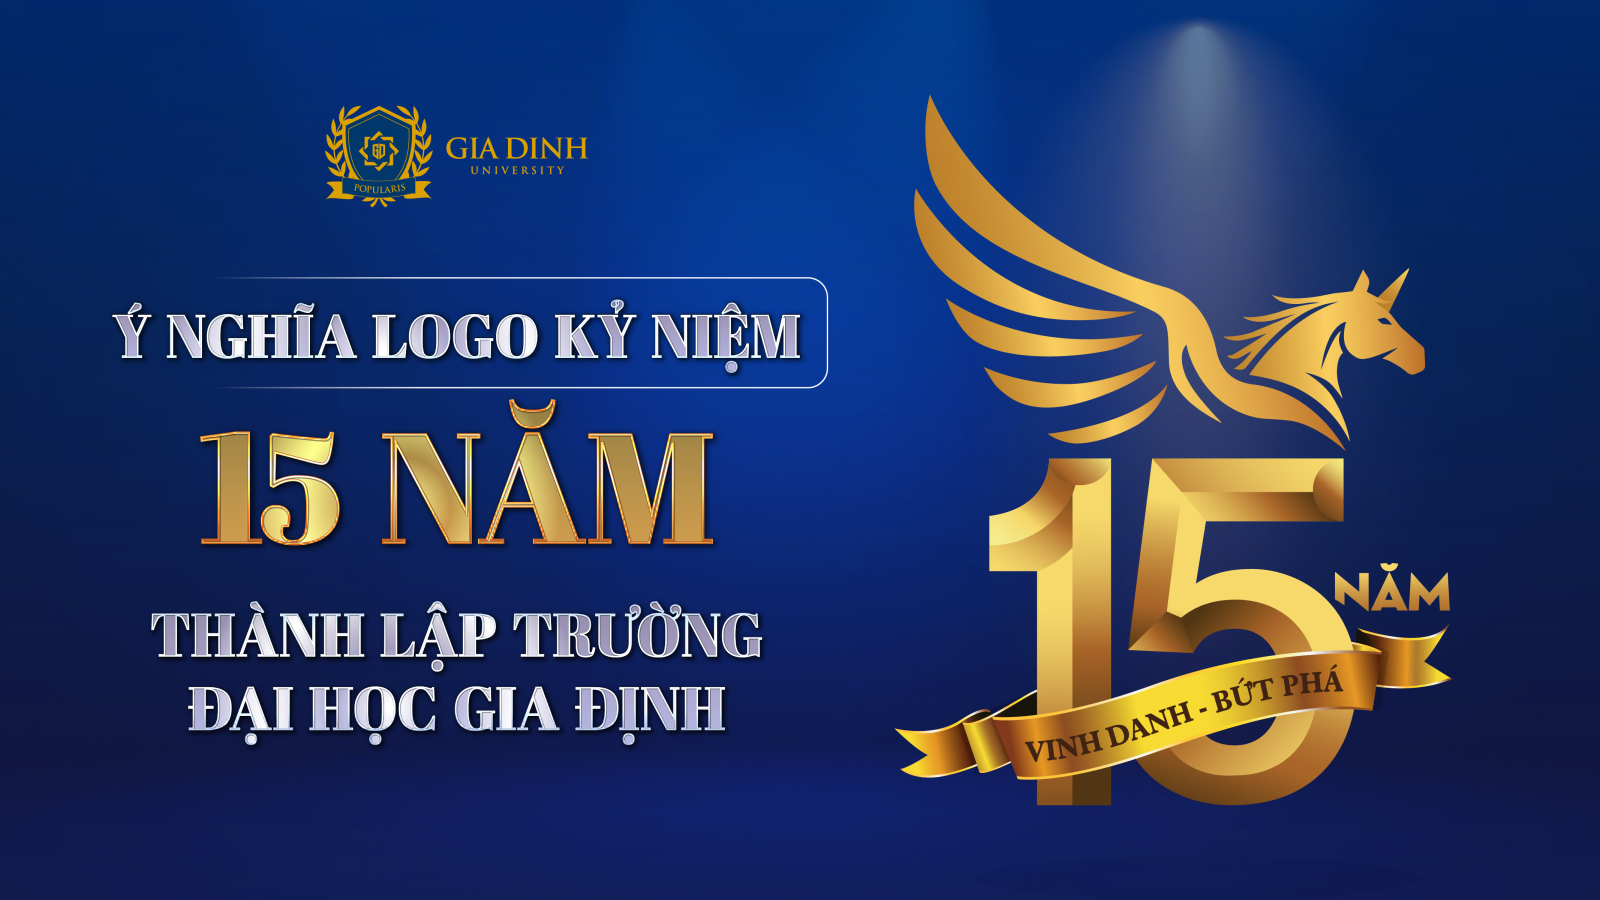 Ý nghĩa logo kỷ niệm 15 năm thành lập trường Đại học Gia Định